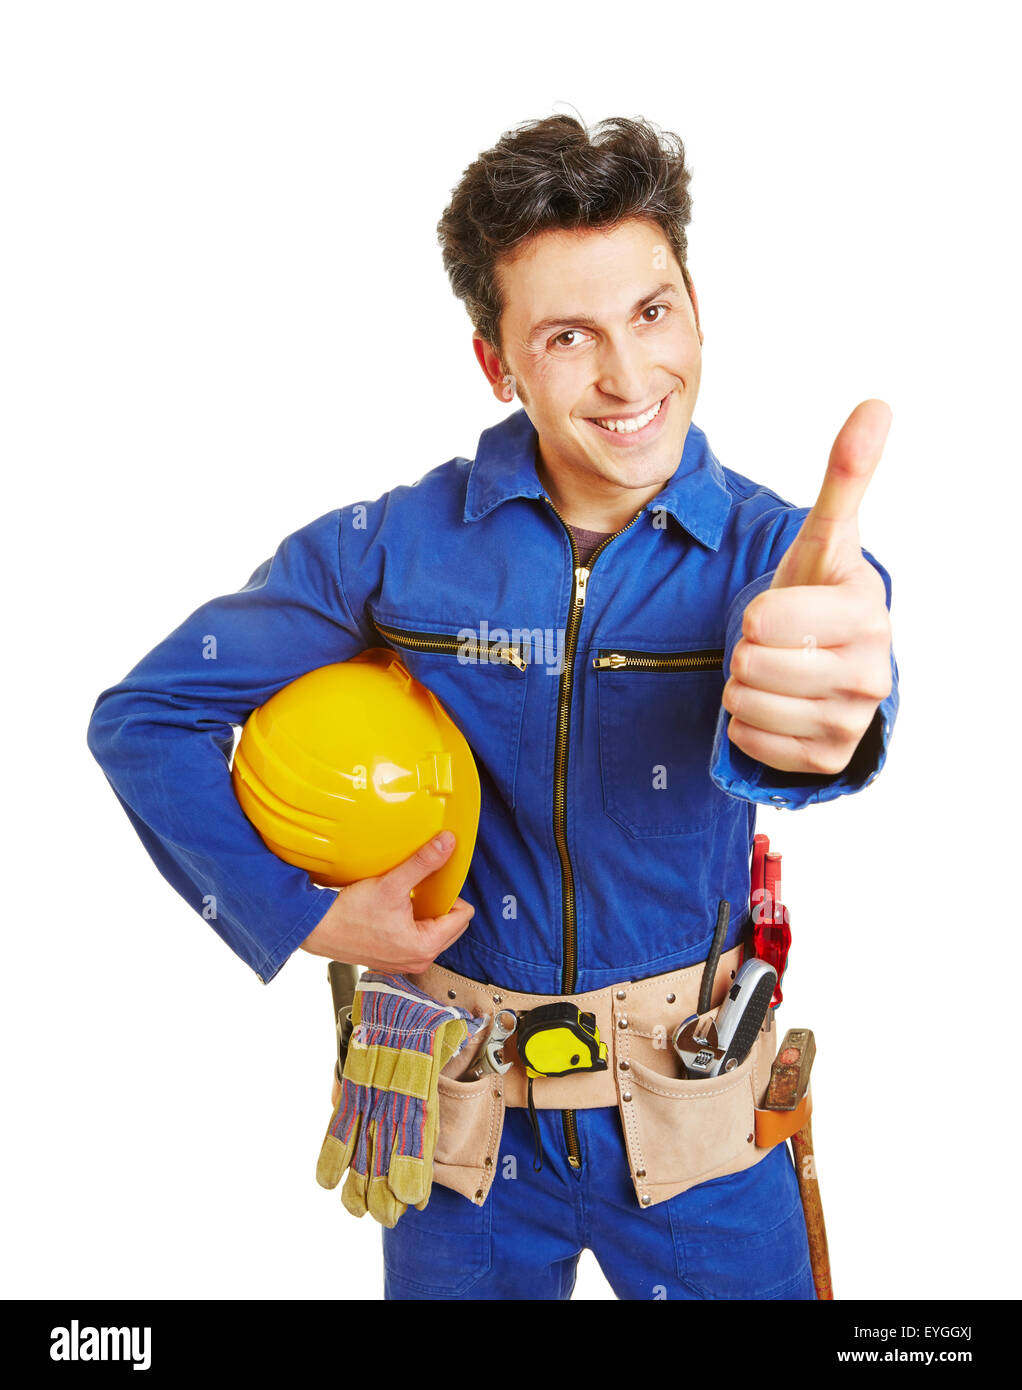 Glückliche Arbeiter mit Bauarbeiterhelm und Werkzeug Gürtel seine Daumen hochhalten Stockfoto